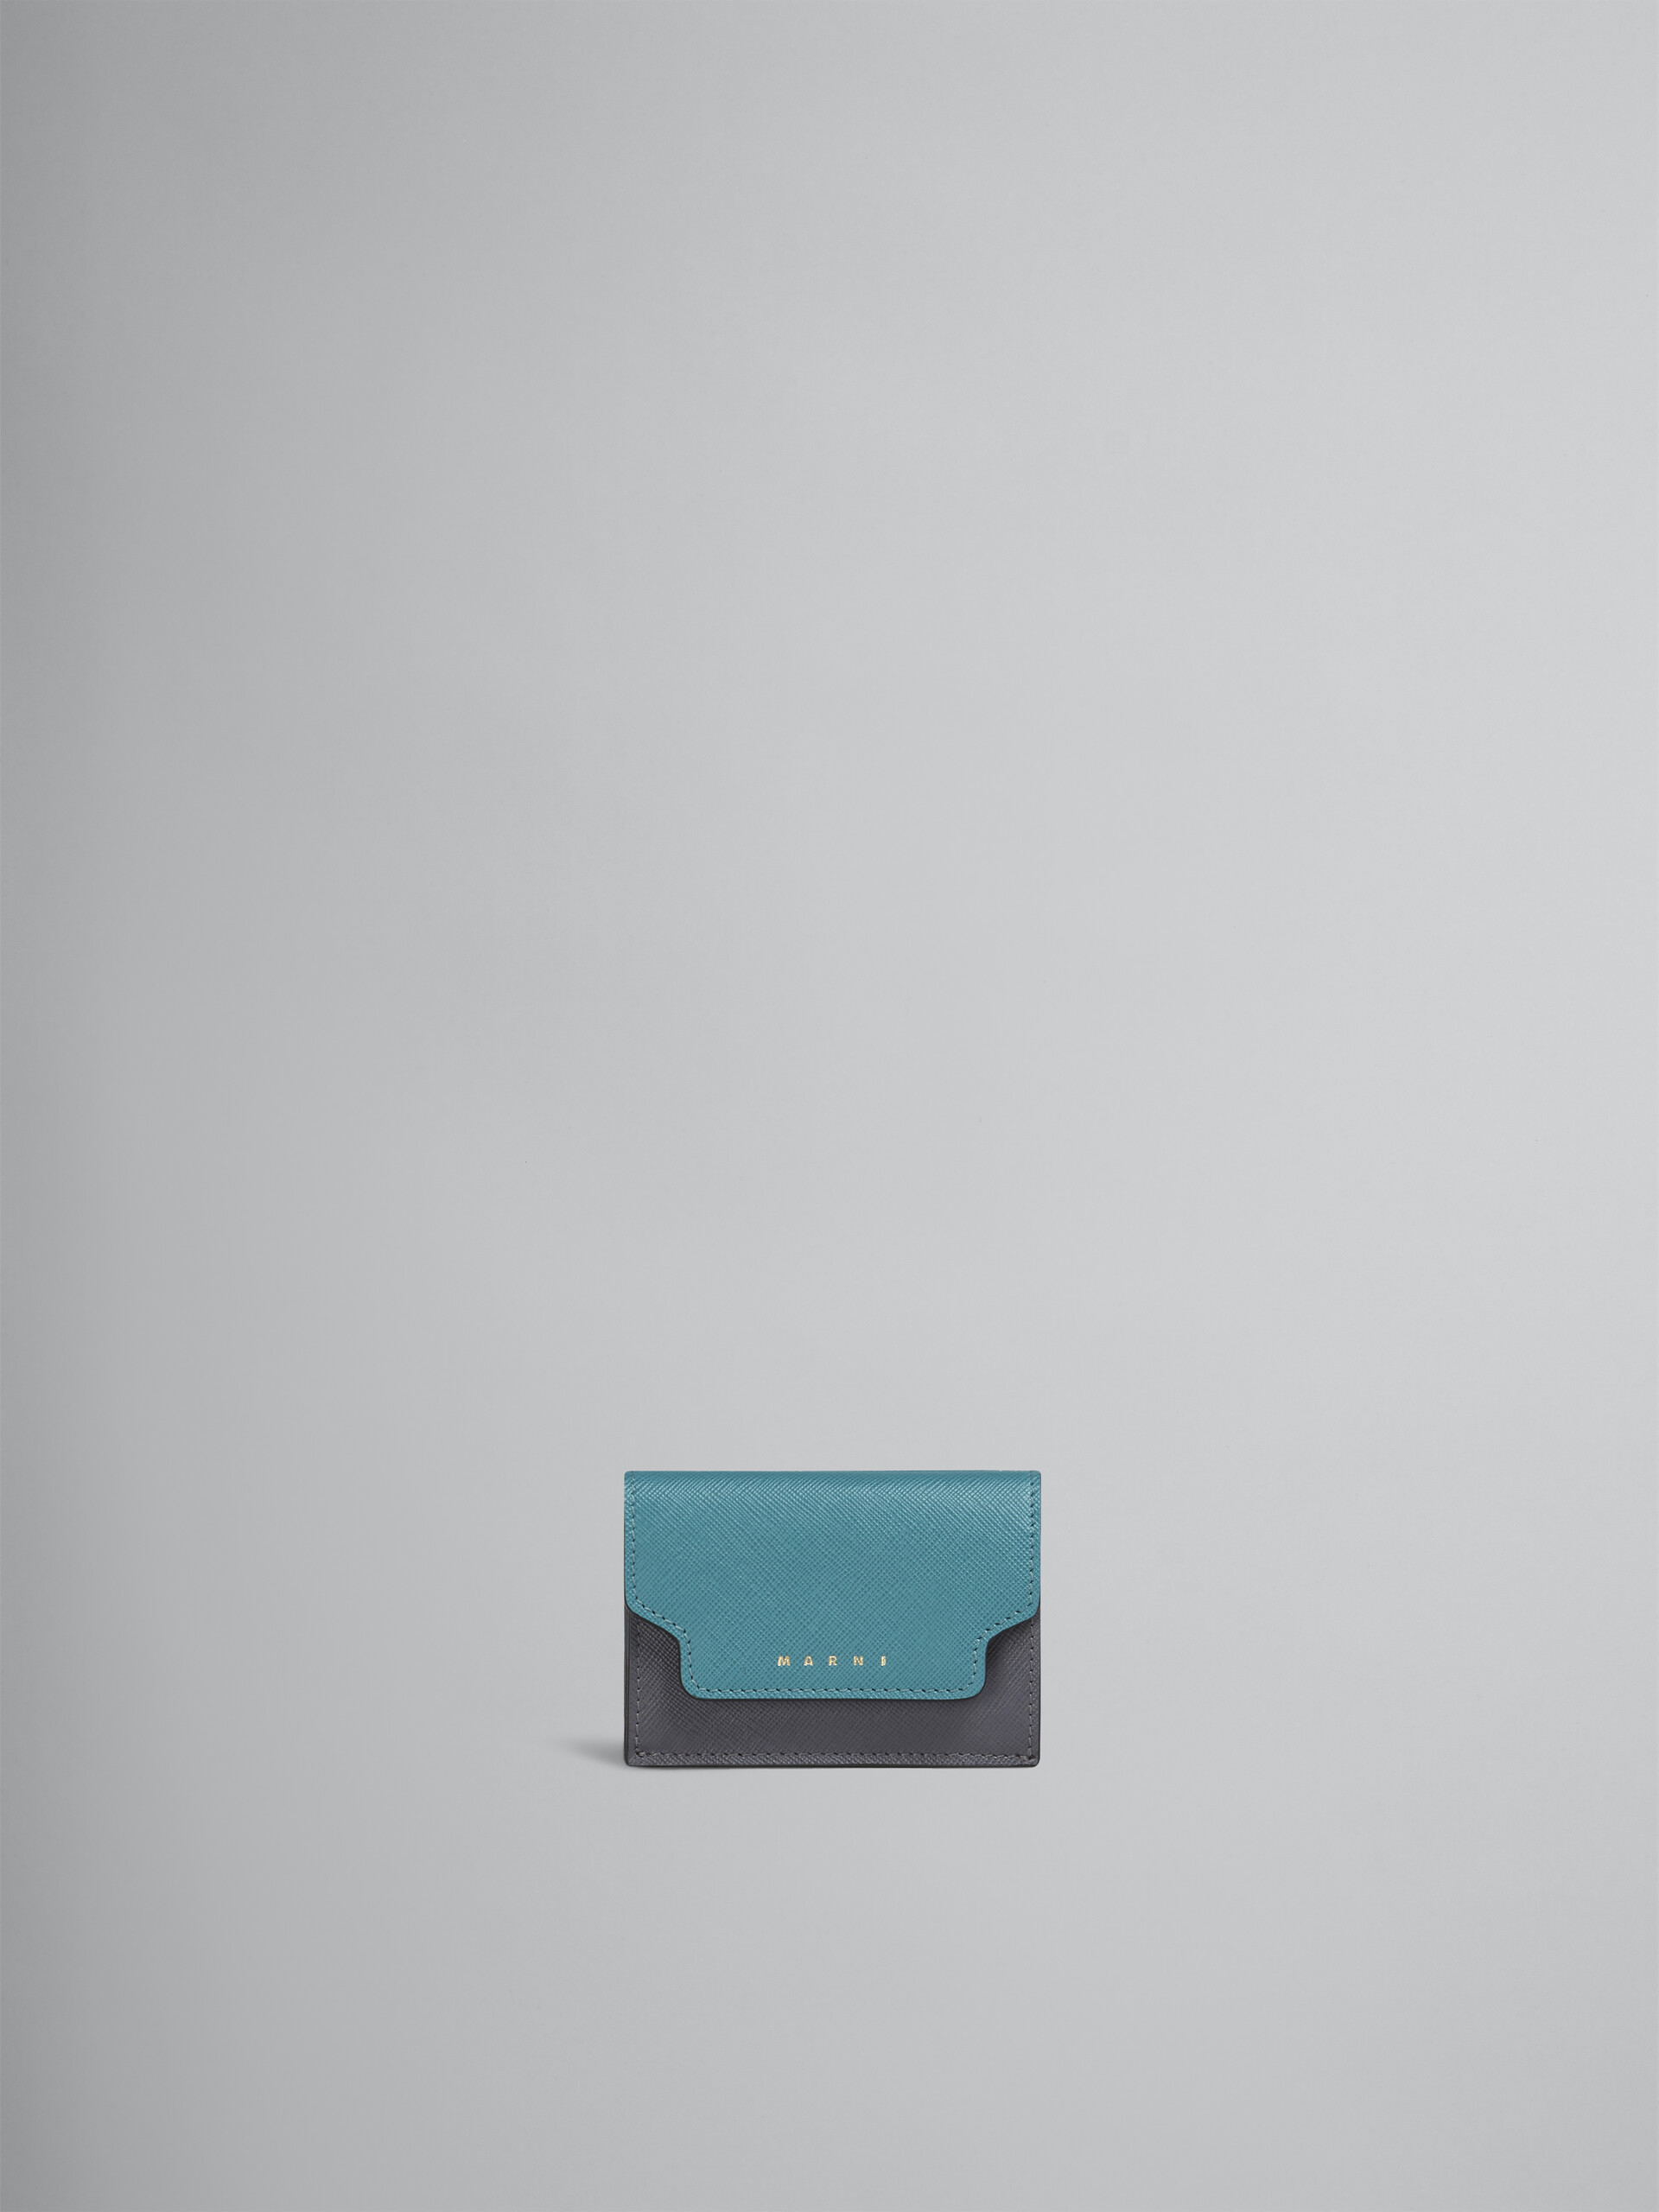 Portafoglio tri-fold in saffiano blu grigio rosso - Portafogli - Image 1